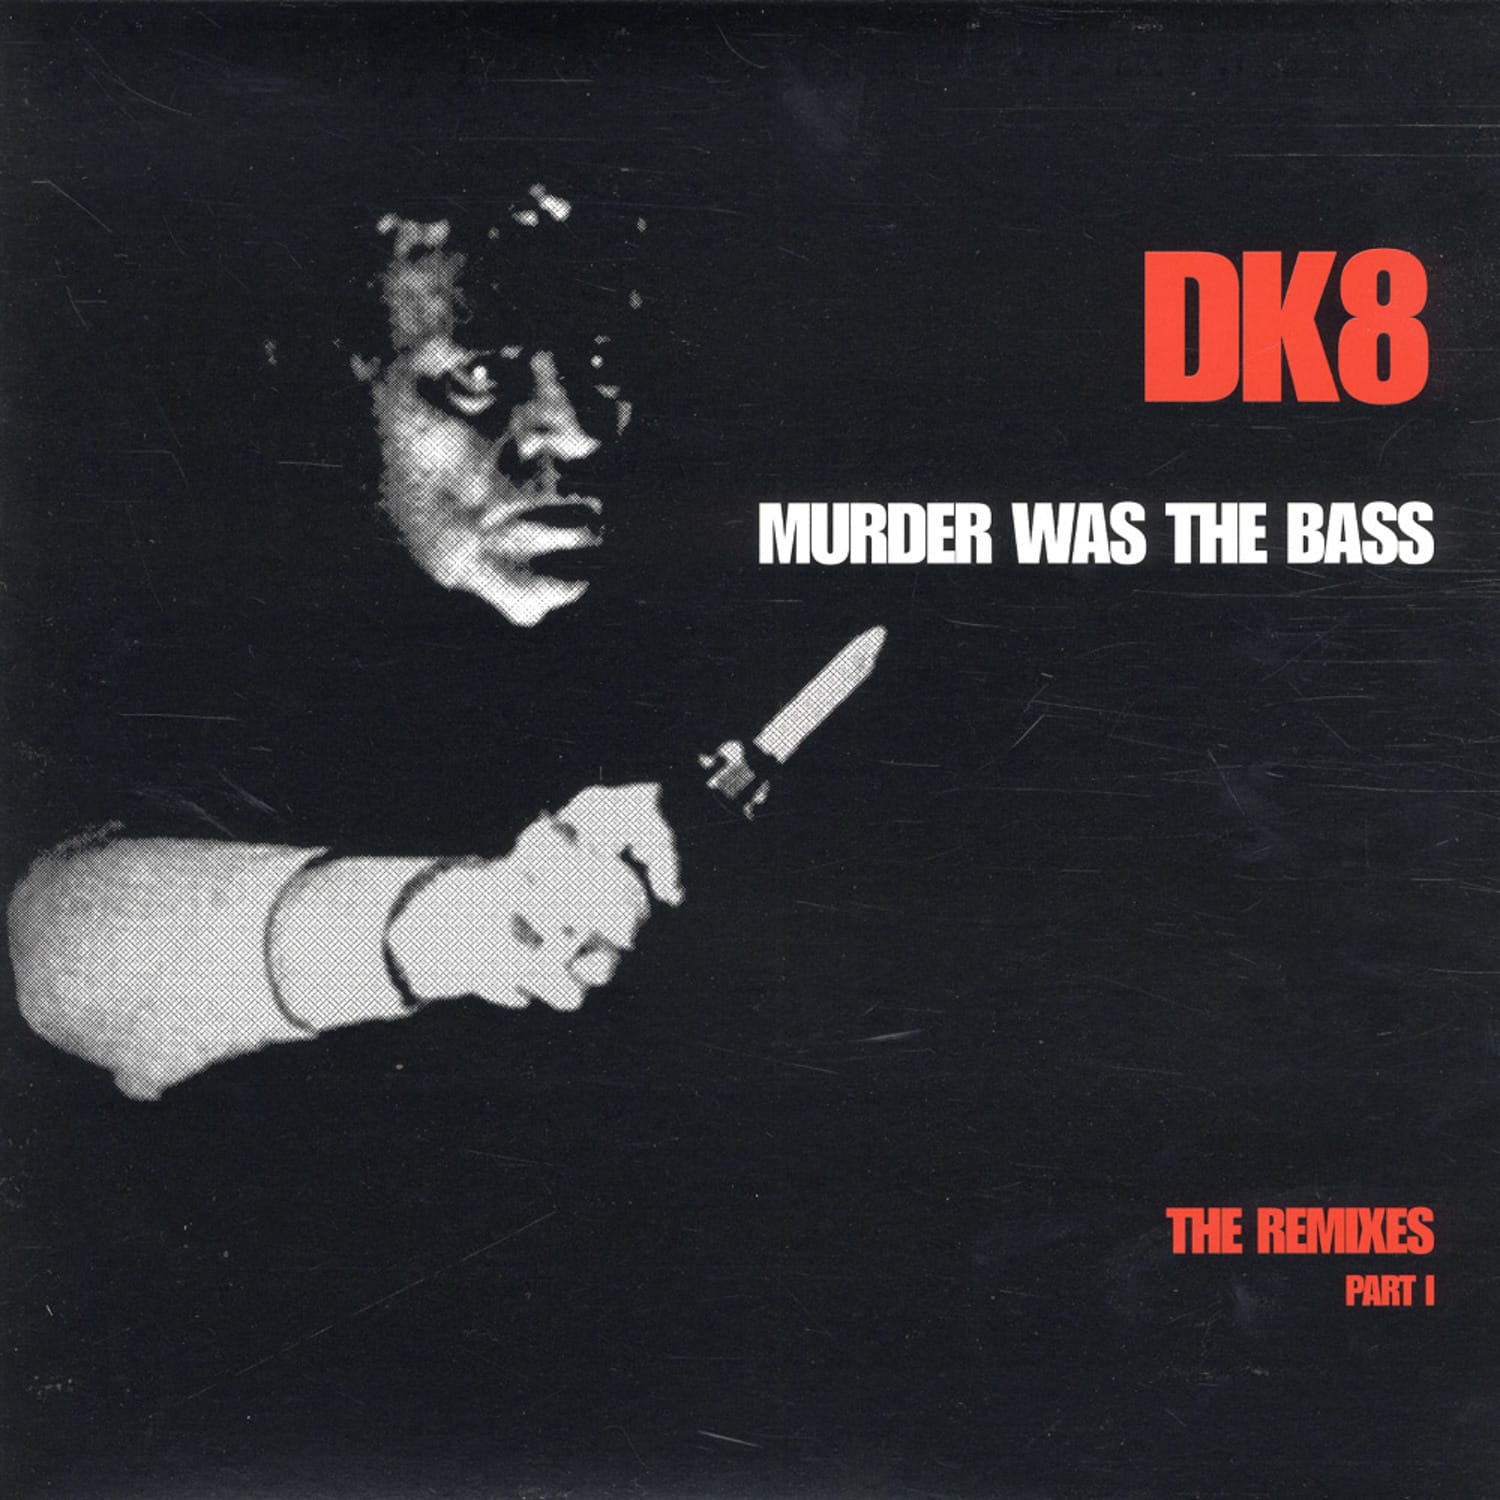 DK 8 - MURDER WAS THE BASS - THE REMIXES PART 1